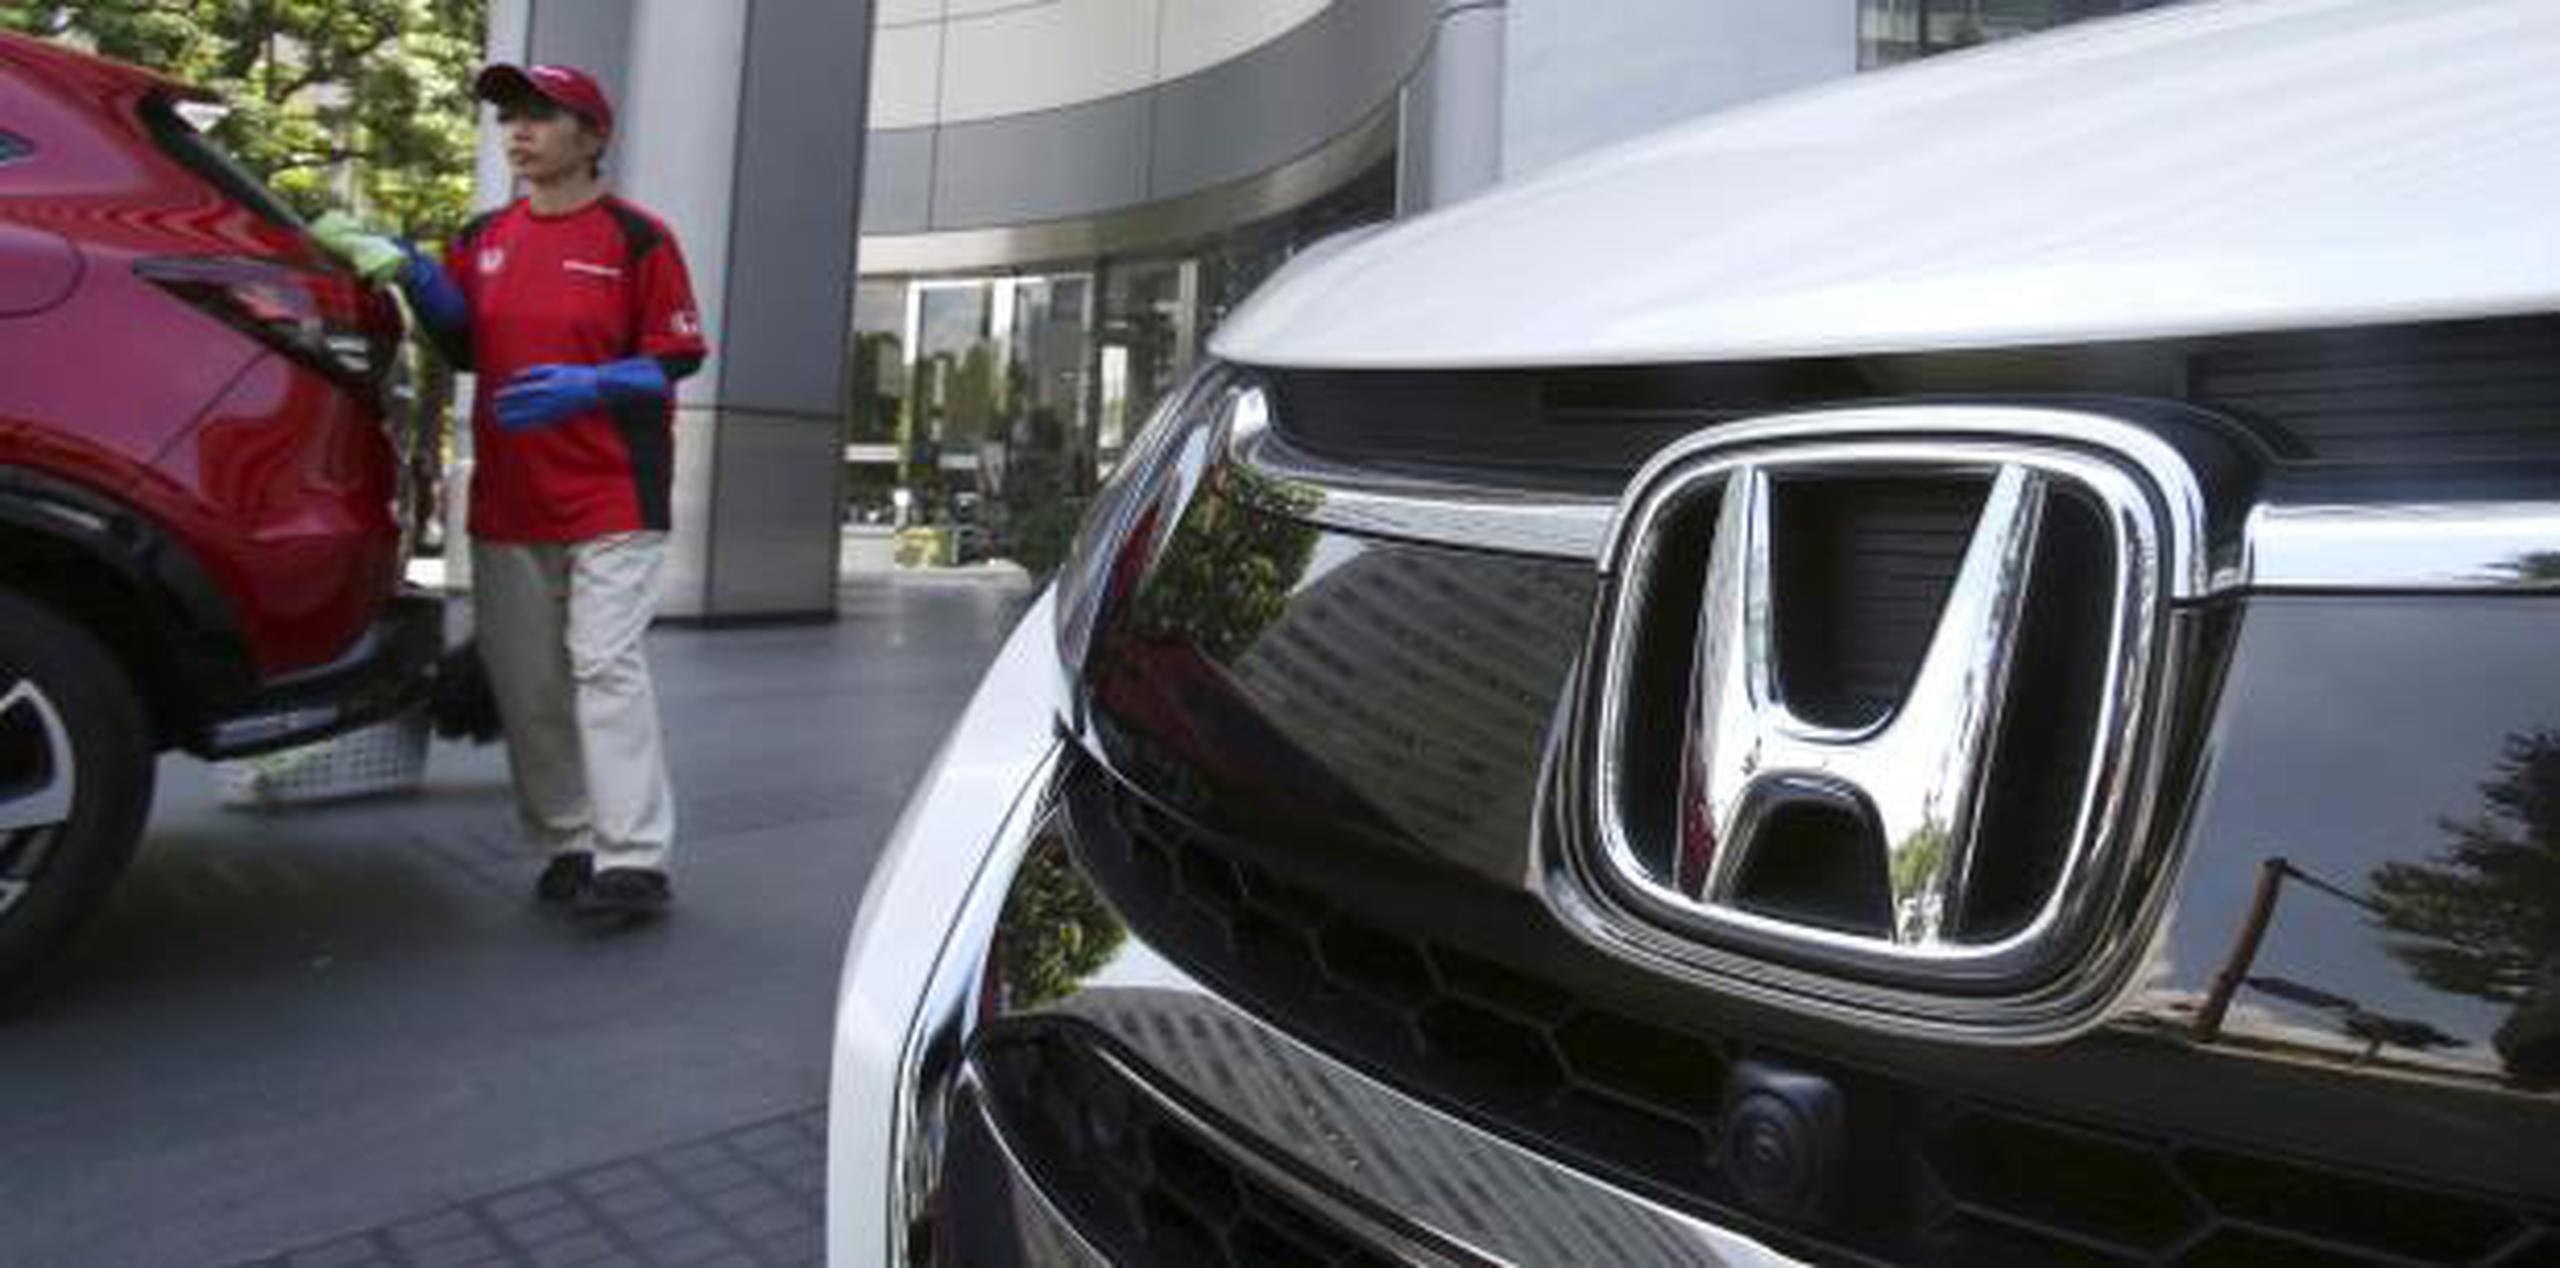 Los infladores de Takata han sido la causa del mayor retiro de automóviles en la historia de Estados Unidos. (AP / Koji Sasahara)